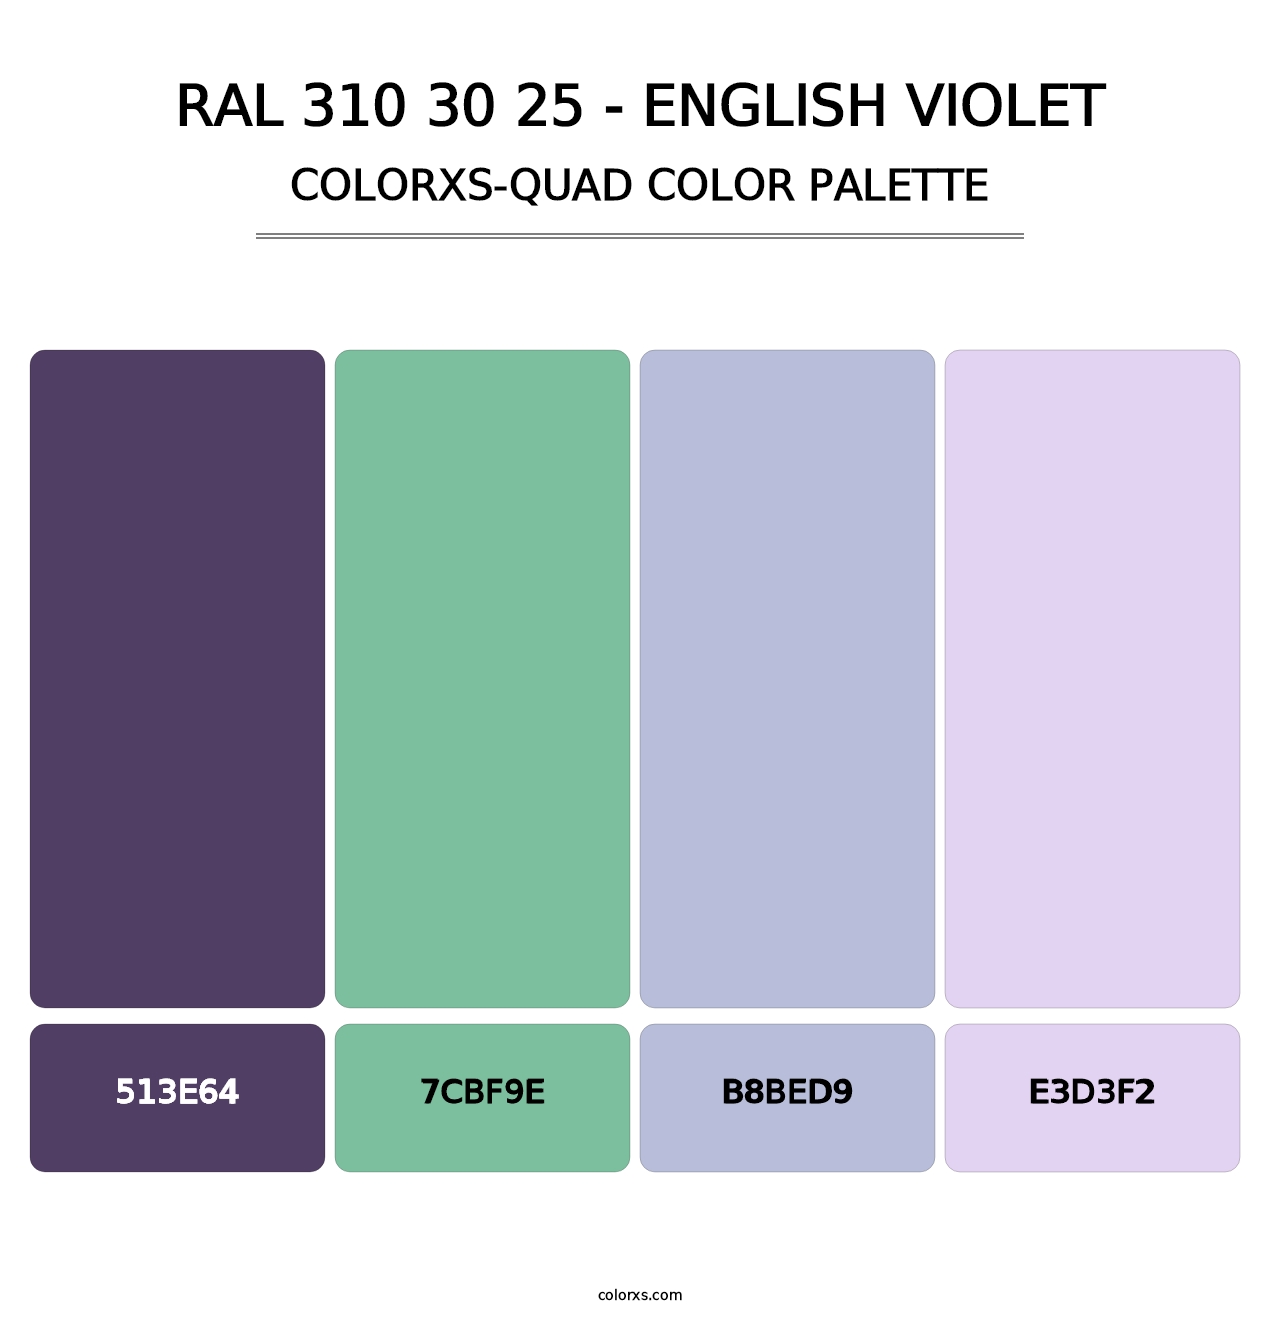 RAL 310 30 25 - English Violet - Colorxs Quad Palette